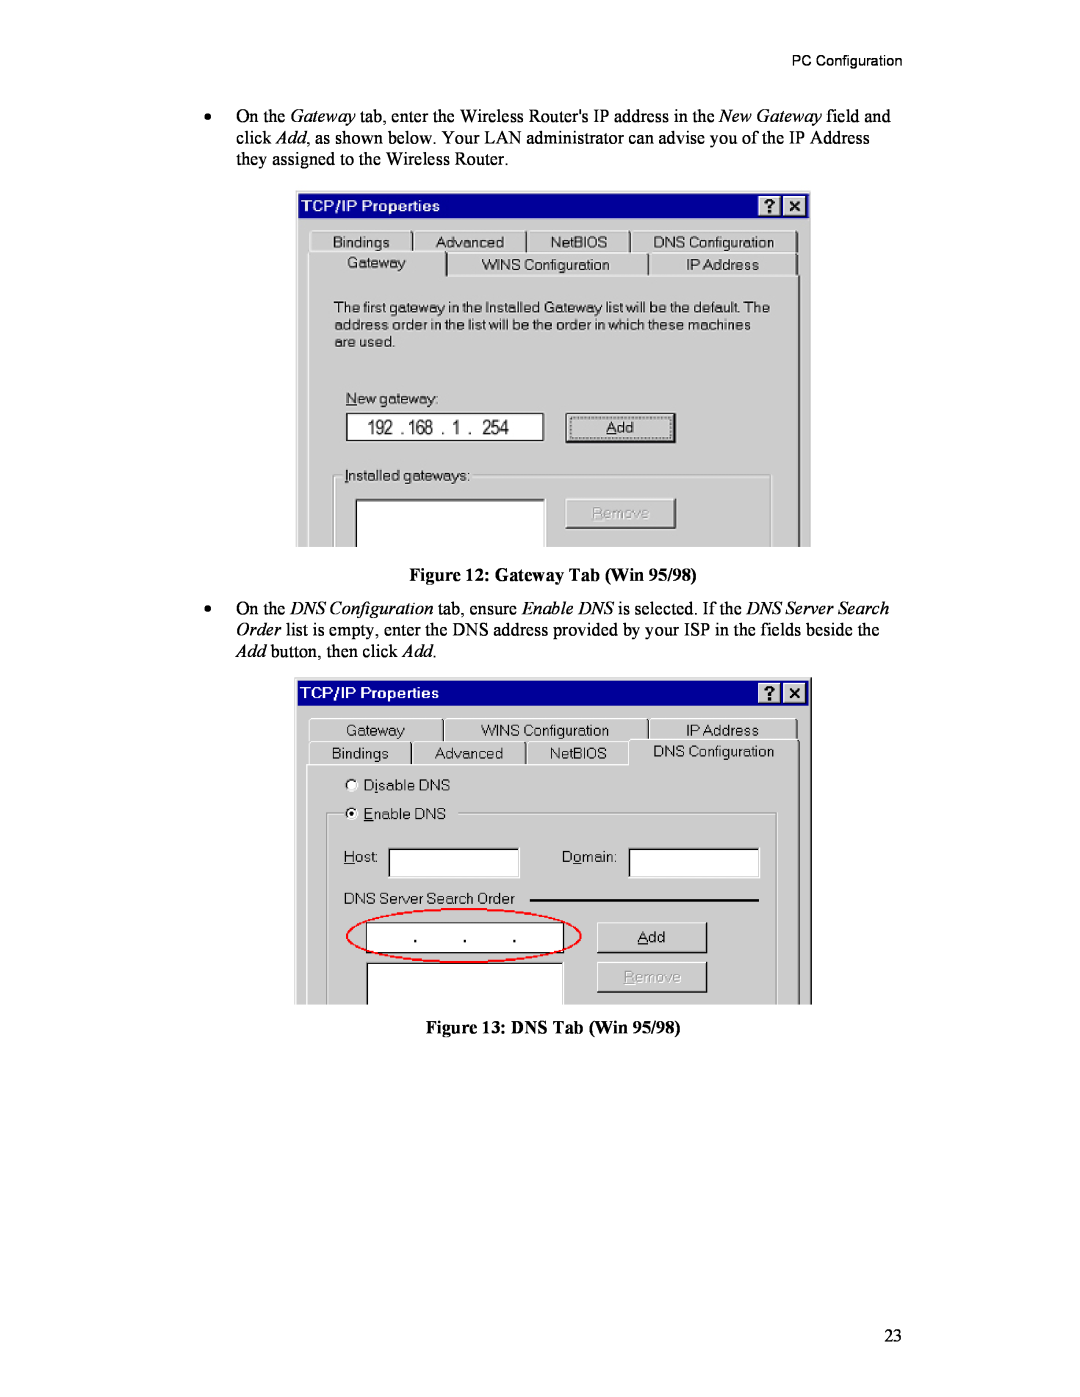 Hawking Technology HWR54G manual Gateway Tab Win 95/98, DNS Tab Win 95/98, PC Configuration 